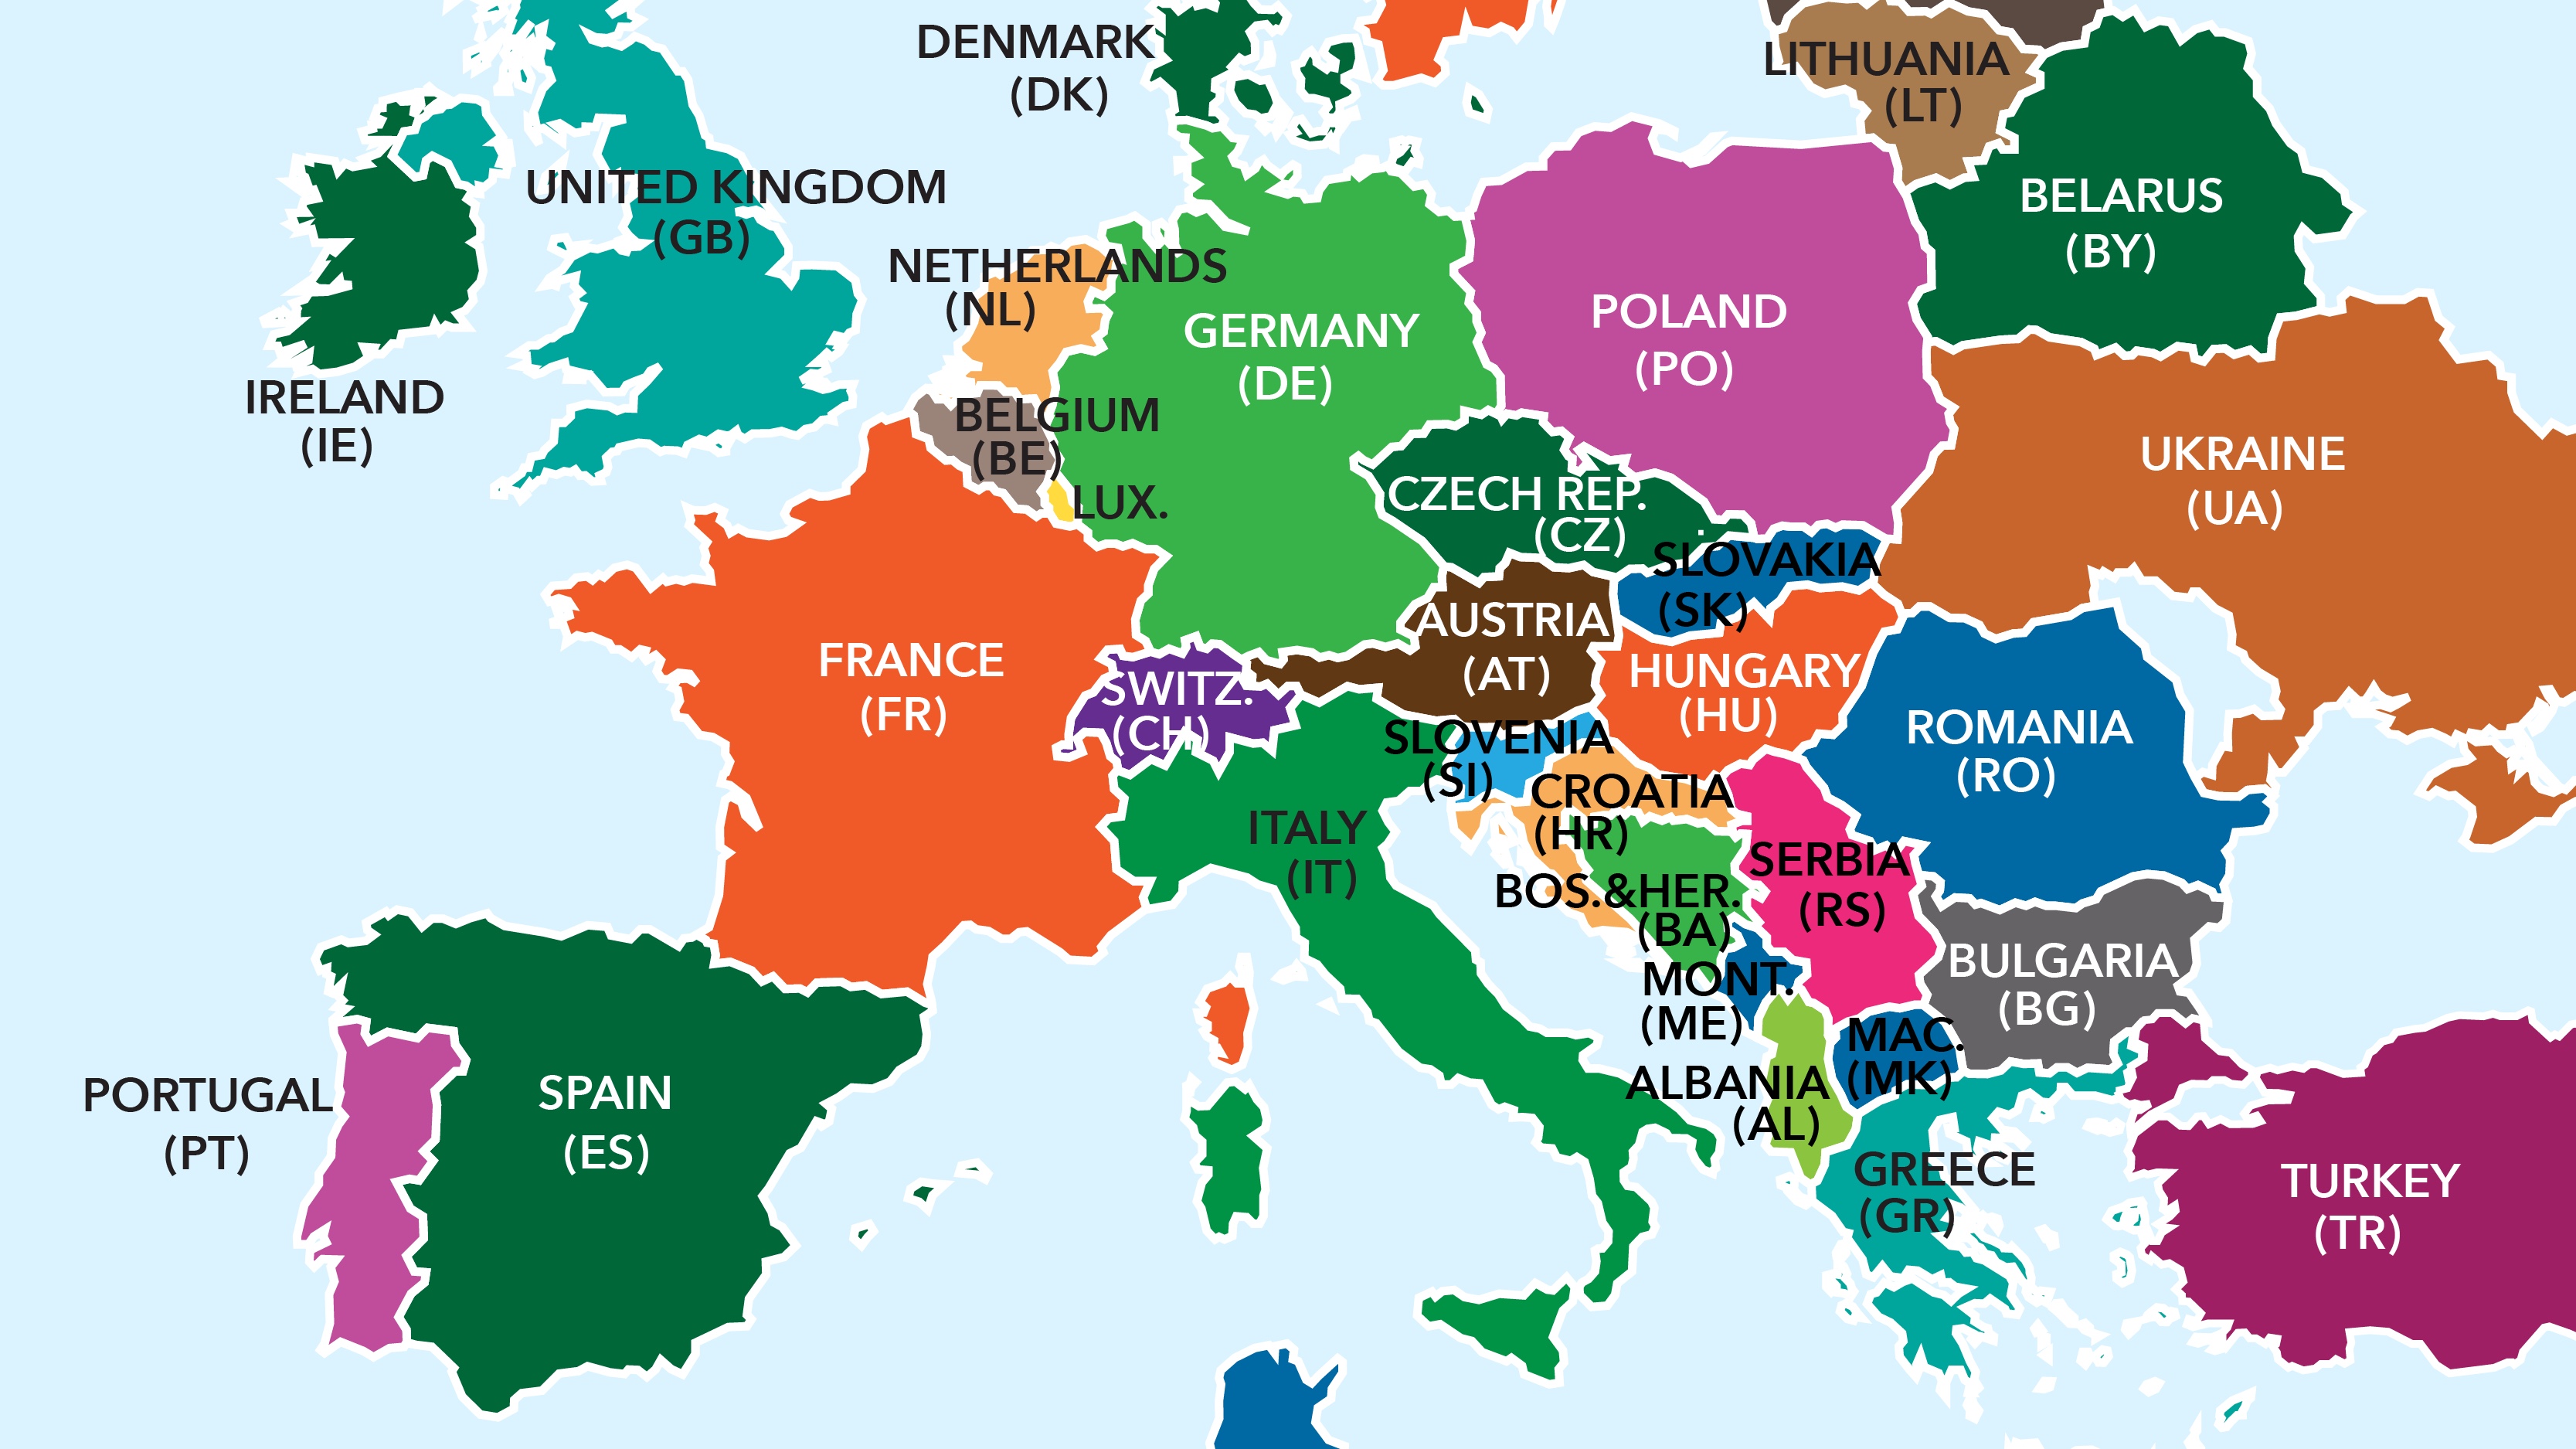 It this part of the country. Карта европейских стран. Европейские государства. Страны Европы. Карта Европы со странами на английском.